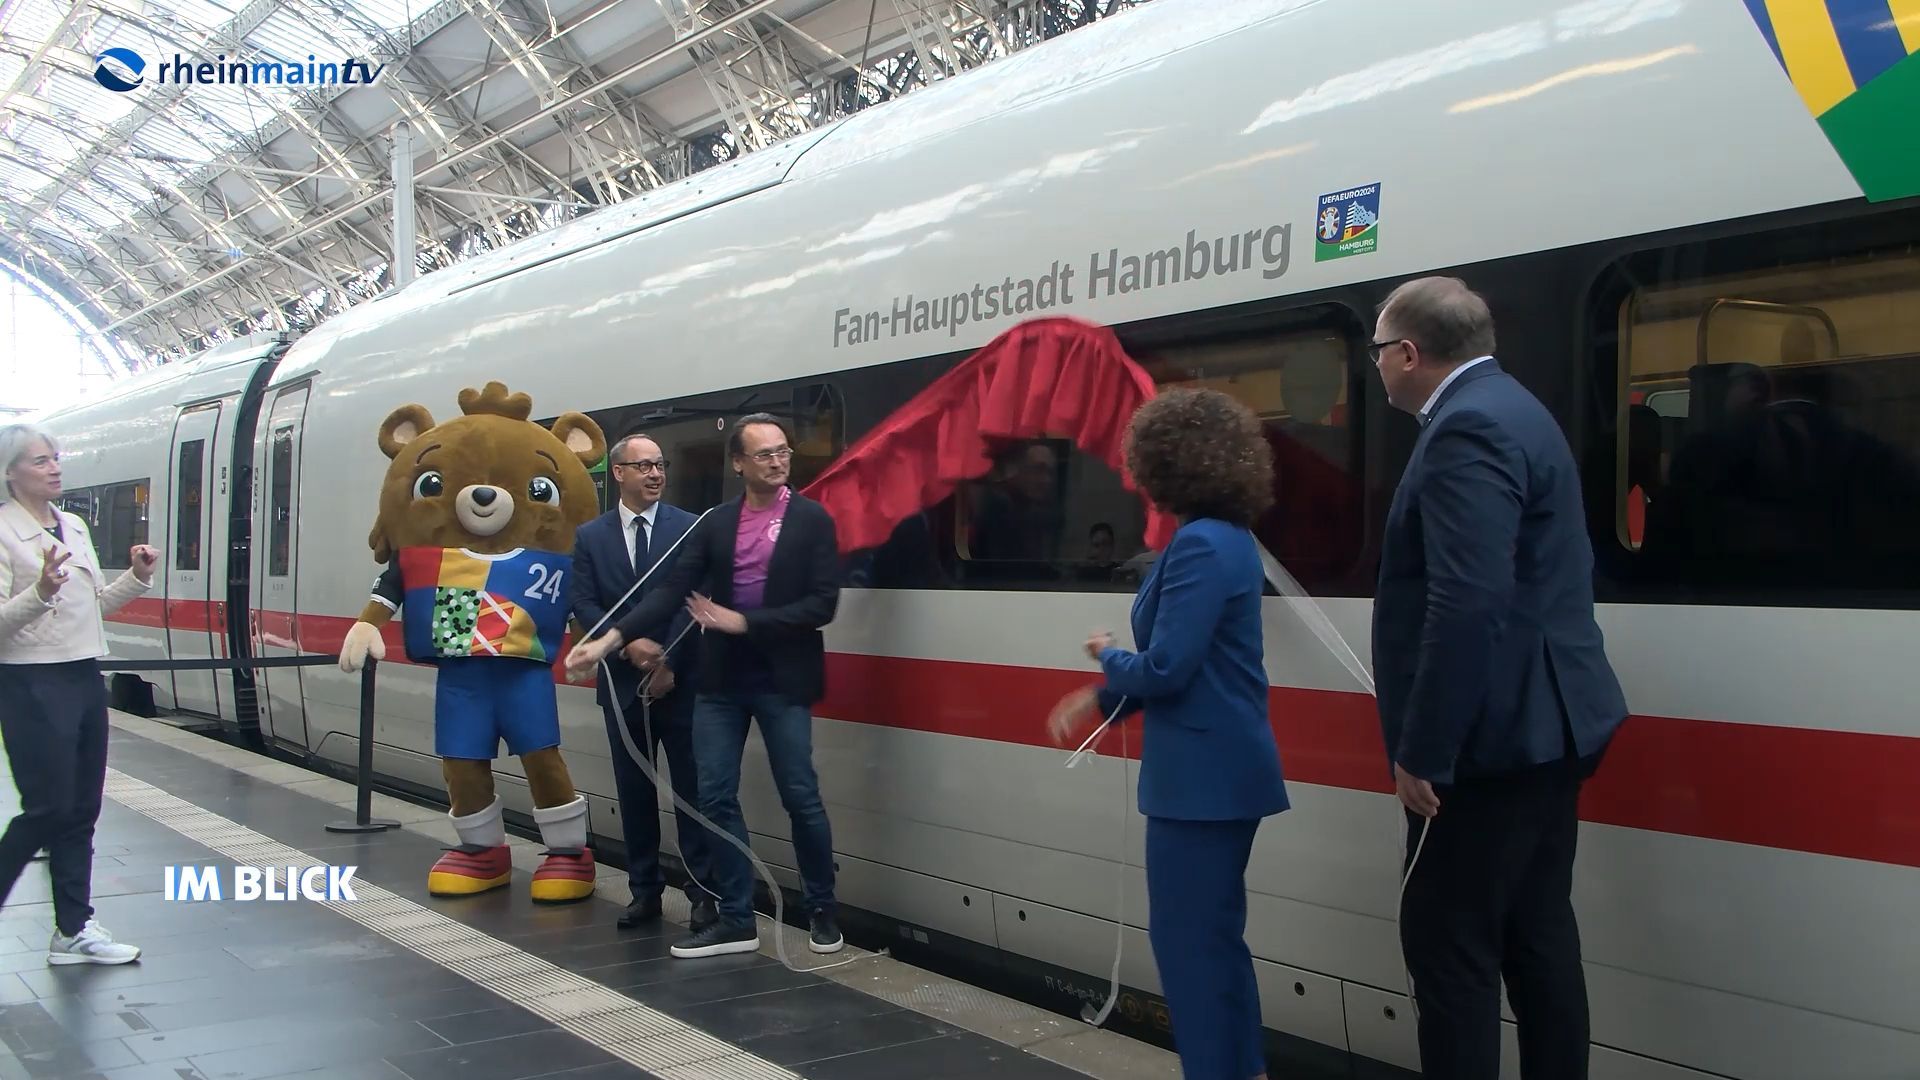 EM-ICE 2024 am Frankfurter Hauptbahnhof auf „Fan-Hauptstadt Hamburg“ getauft